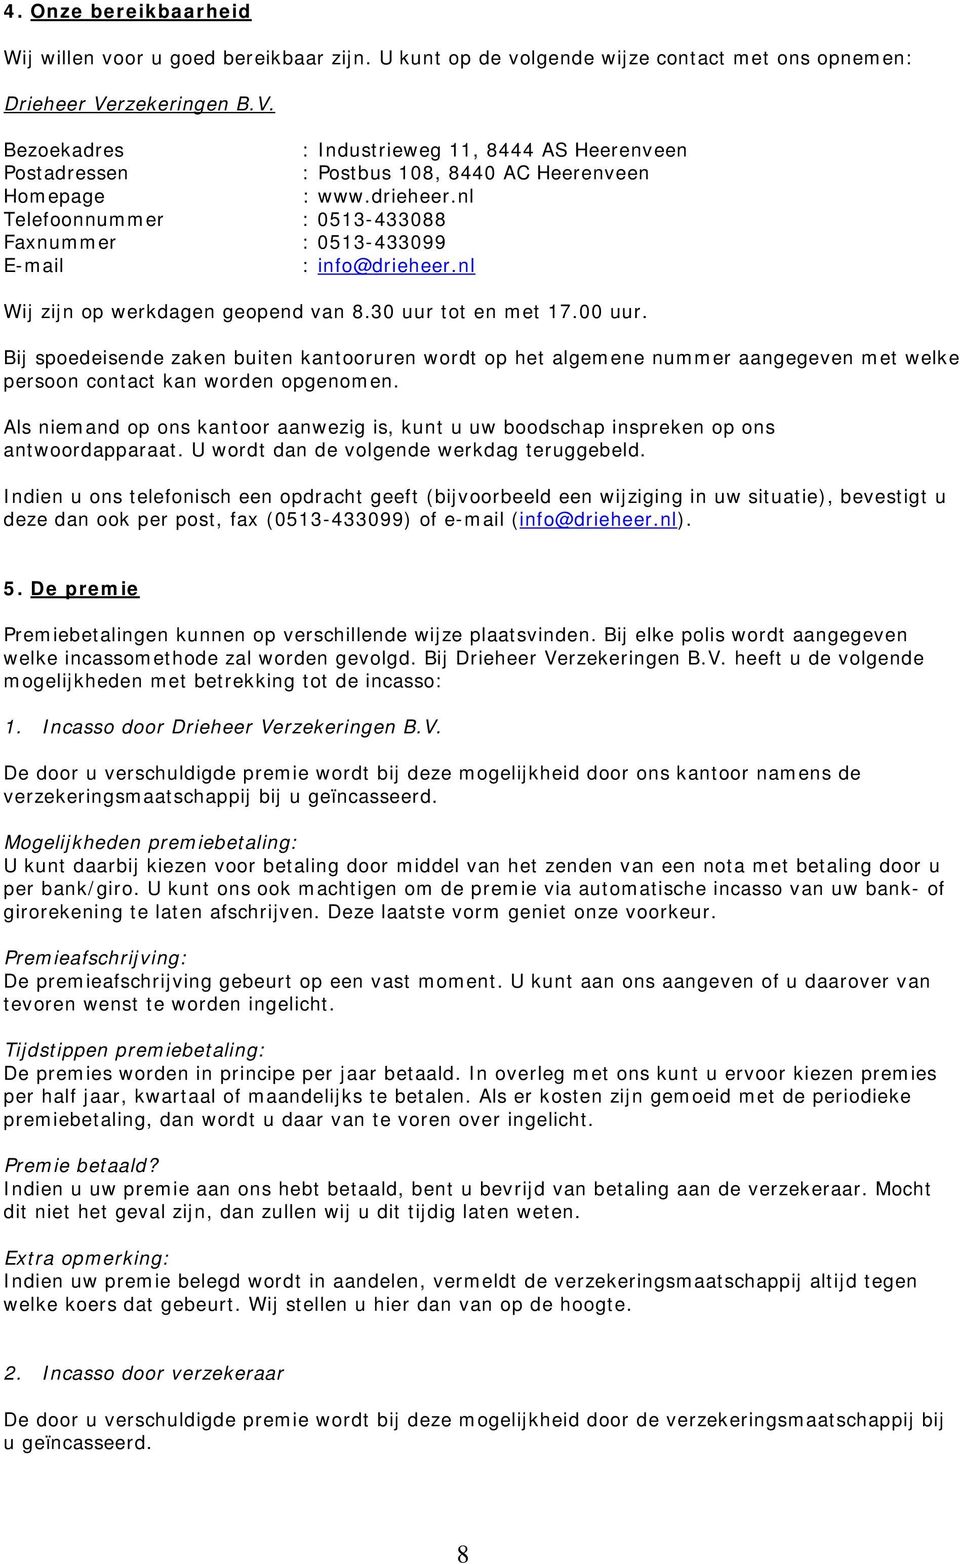 nl Telefoonnummer : 0513-433088 Faxnummer : 0513-433099 E-mail : info@drieheer.nl Wij zijn op werkdagen geopend van 8.30 uur tot en met 17.00 uur.